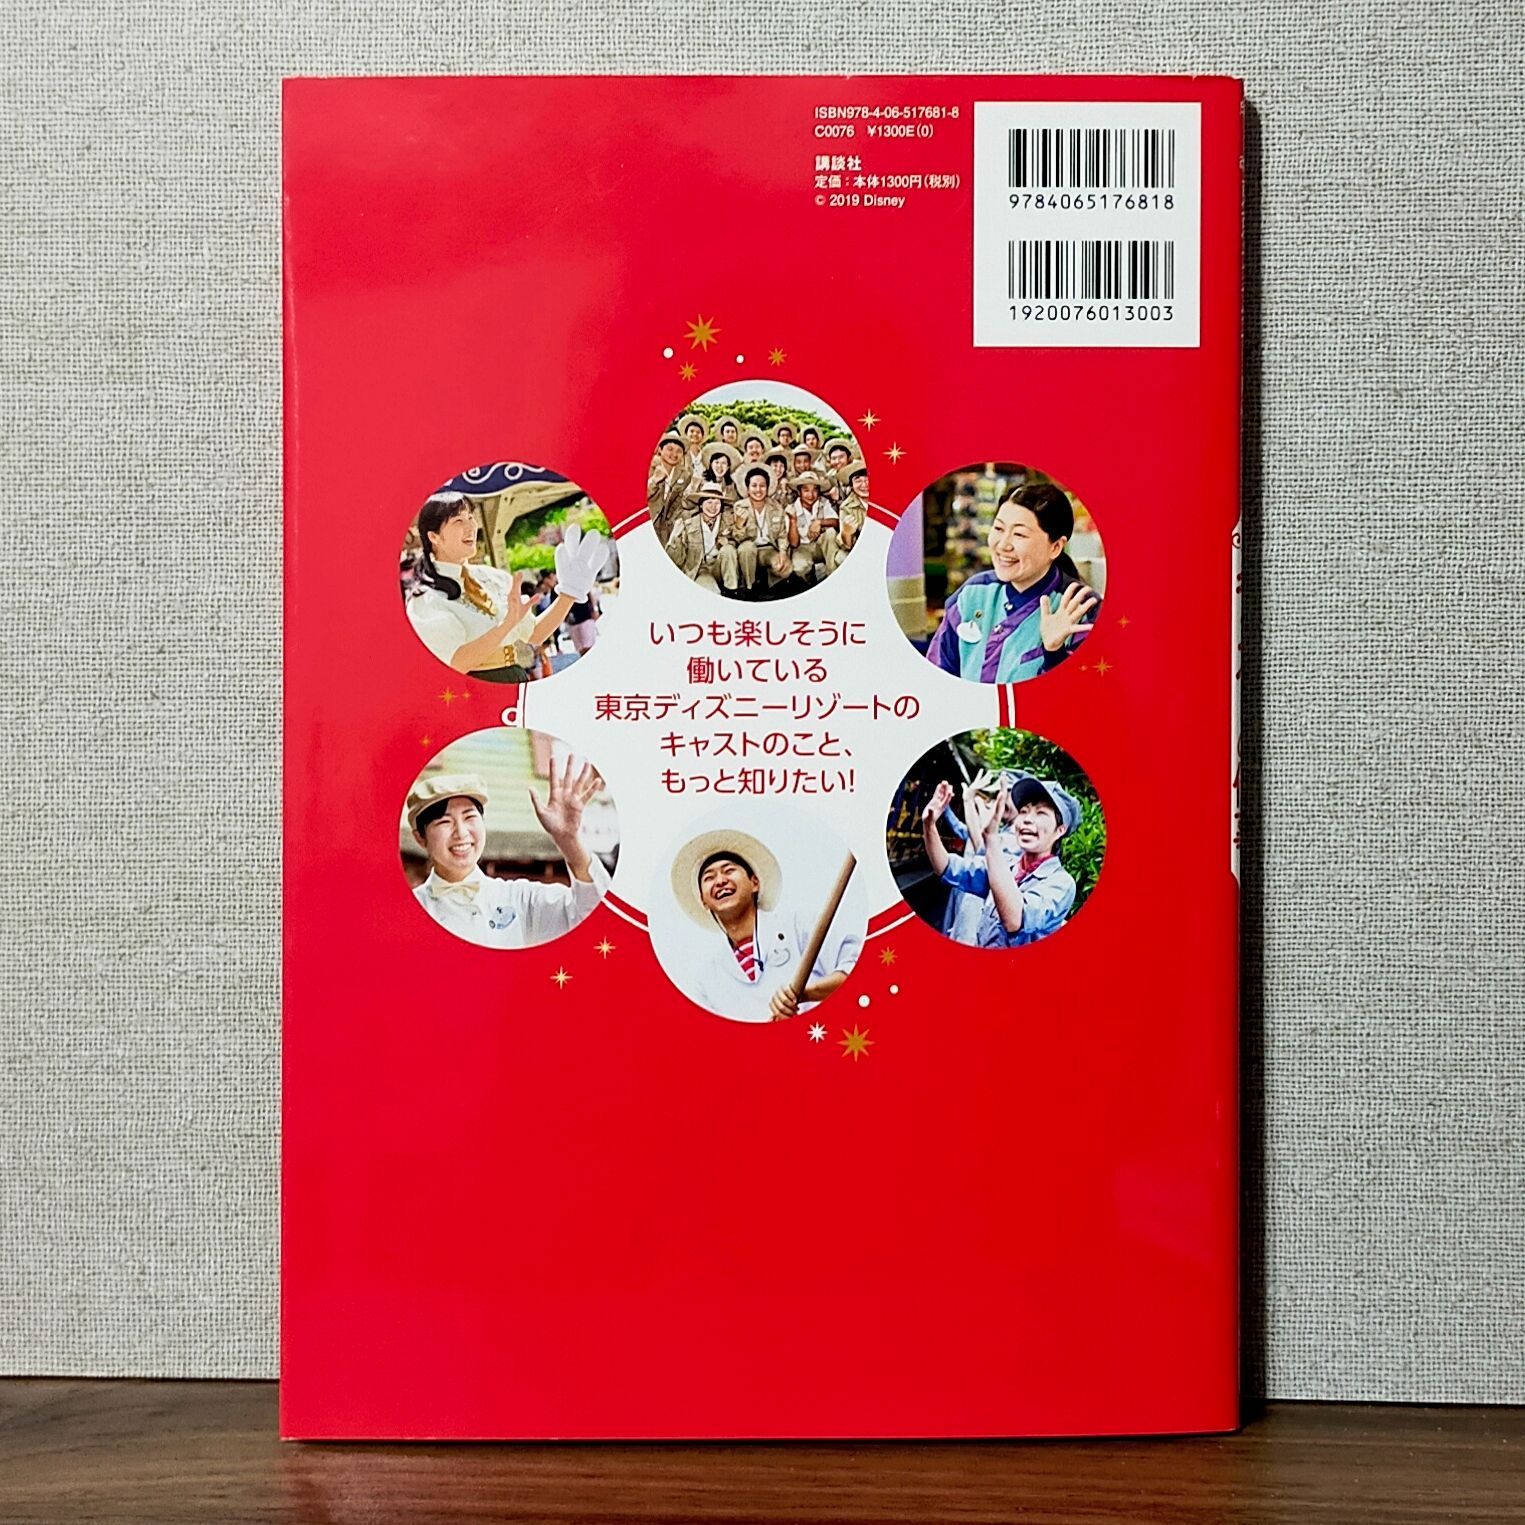 改訂版 東京ディズニーリゾート キャストの仕事 Disney in Pocket - わんわんブックス☆2〜3日以内発送 - メルカリ